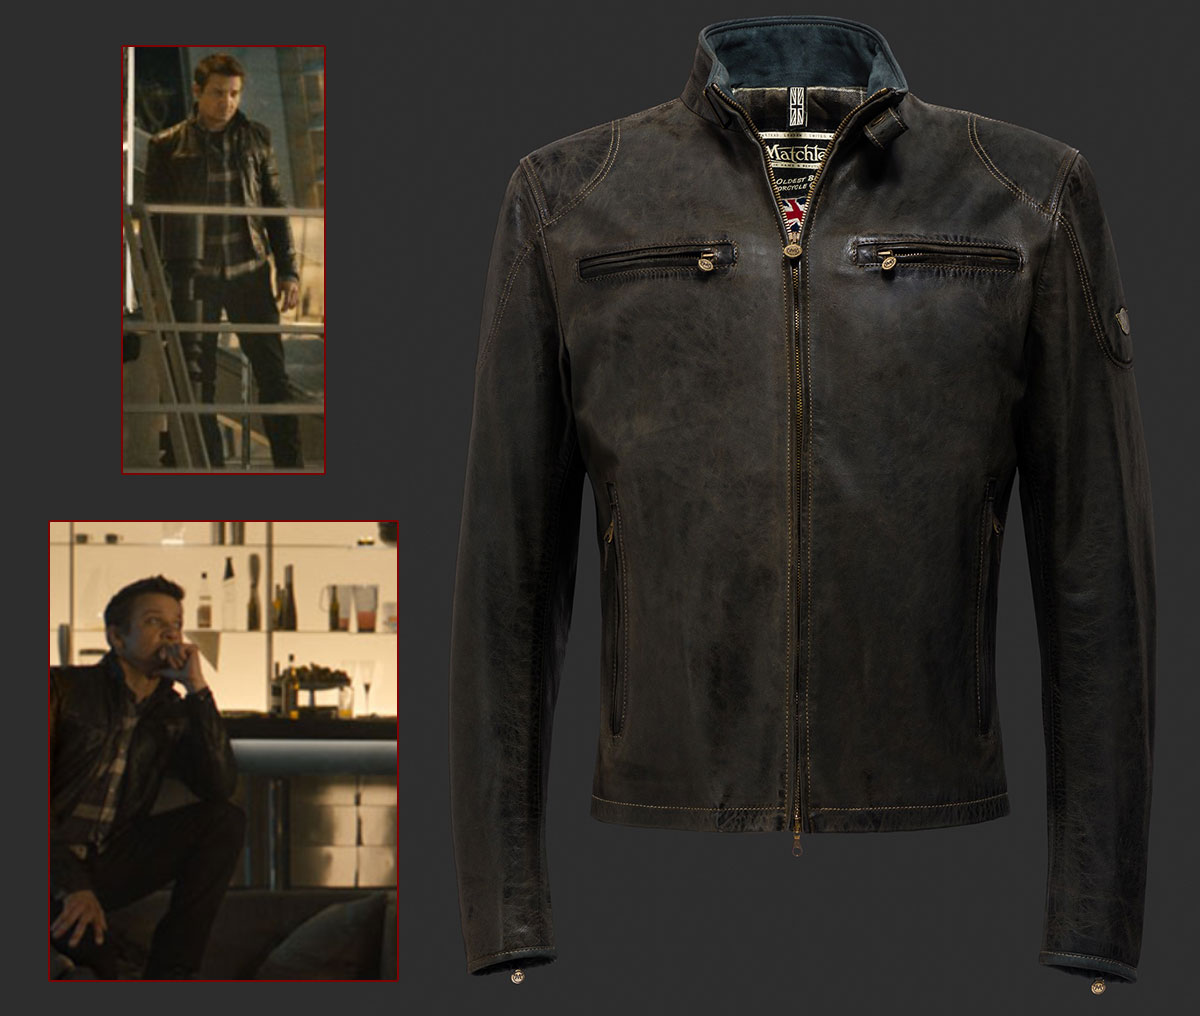 Jeremy Renner Clint Barton Hawkeye Avengers ultron jacket